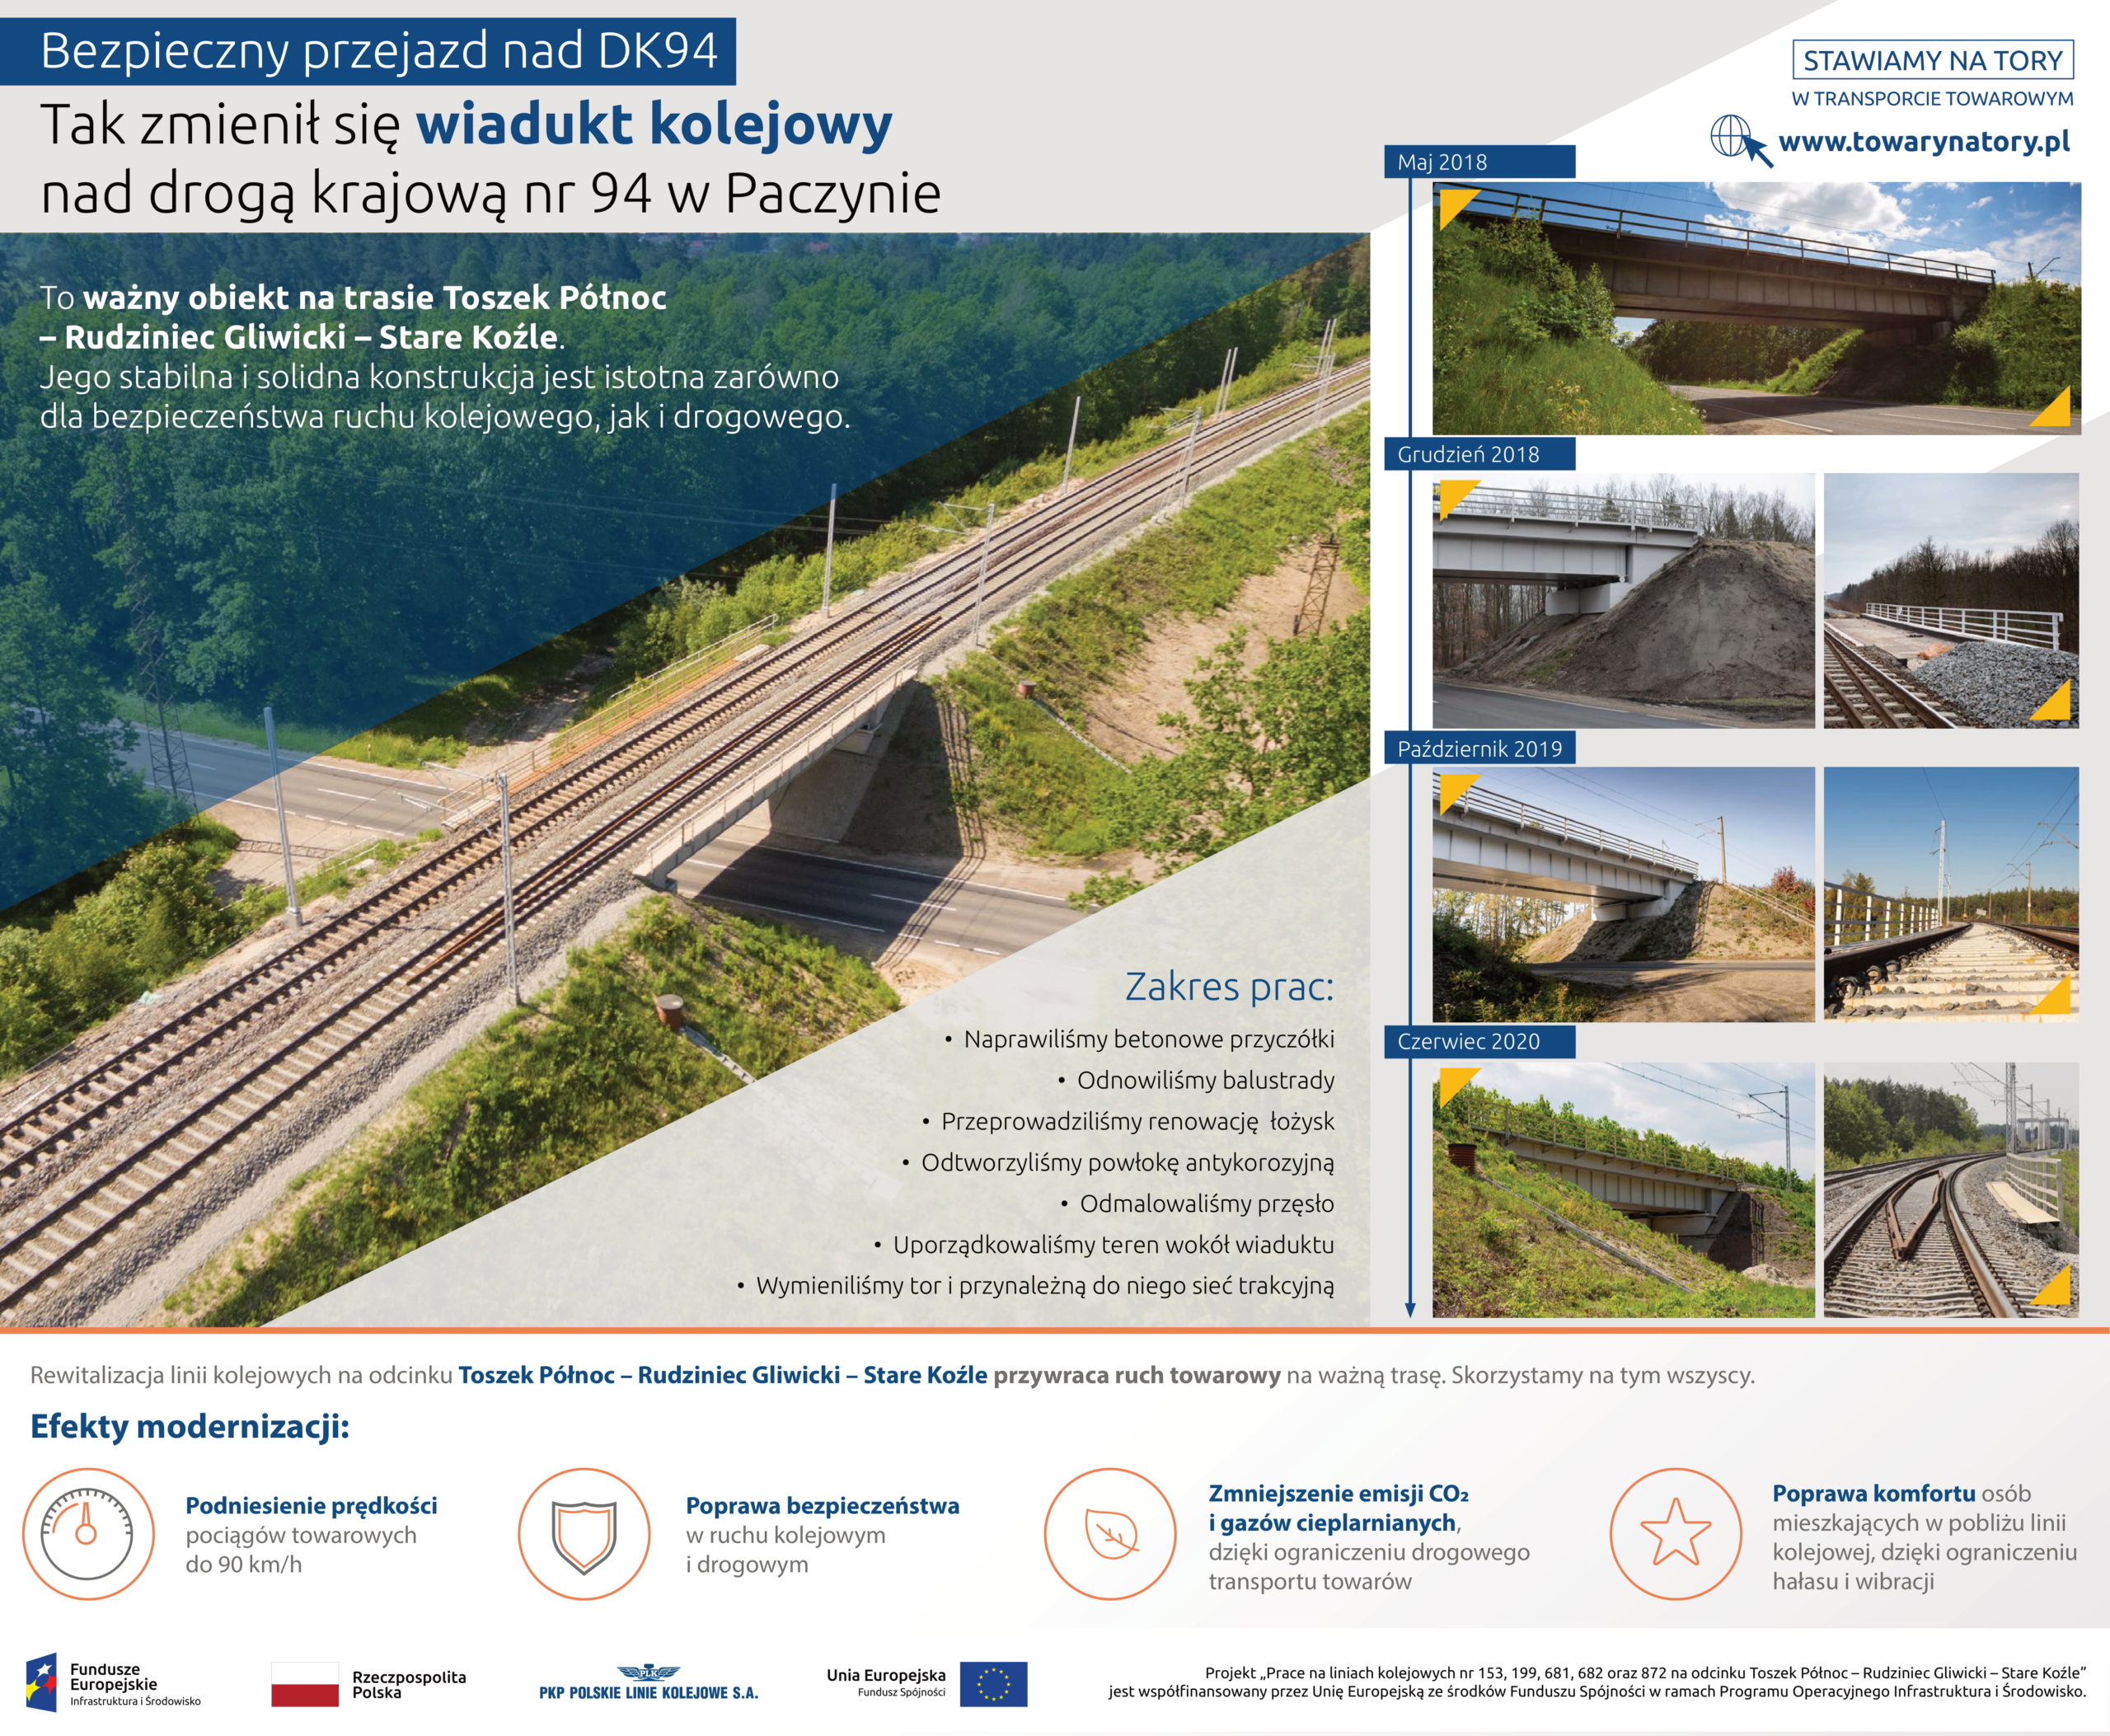 Infografika: obrazowo pokazuje jak zmieniał się wiadukt kolejowy nad drogą kolejową nr 94 w Paczynie. Od maja 2018 do czerwca 2020. 